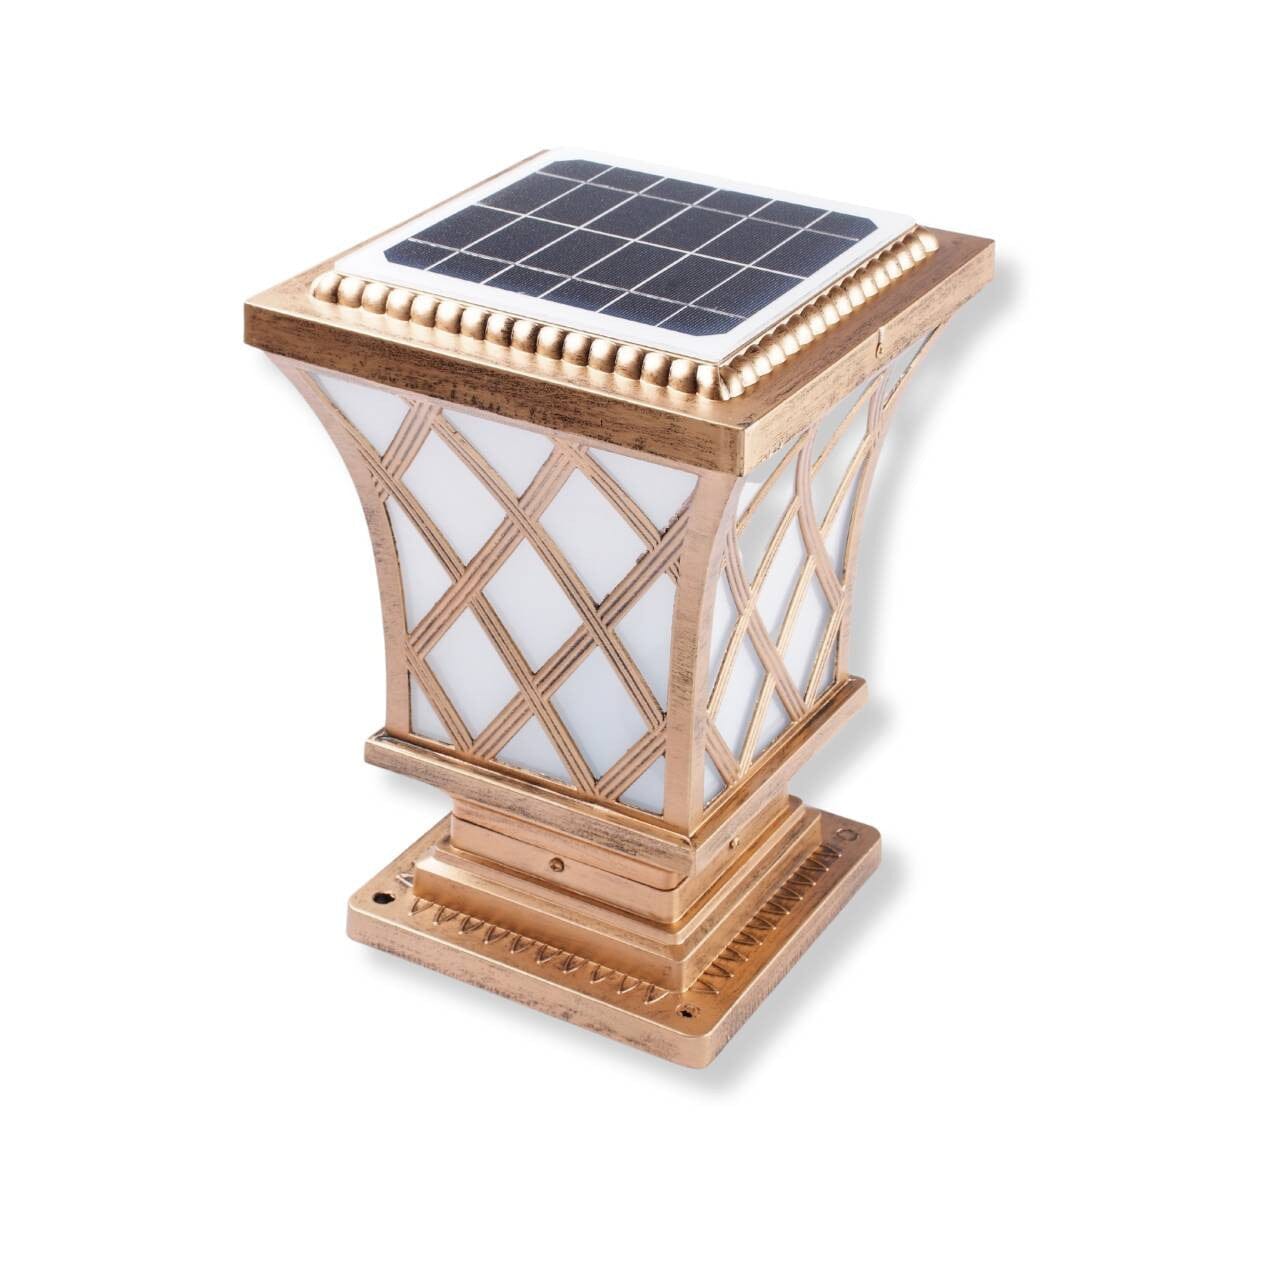 Solar Premium Pillar Light - Bronze or Black - 3 in 1